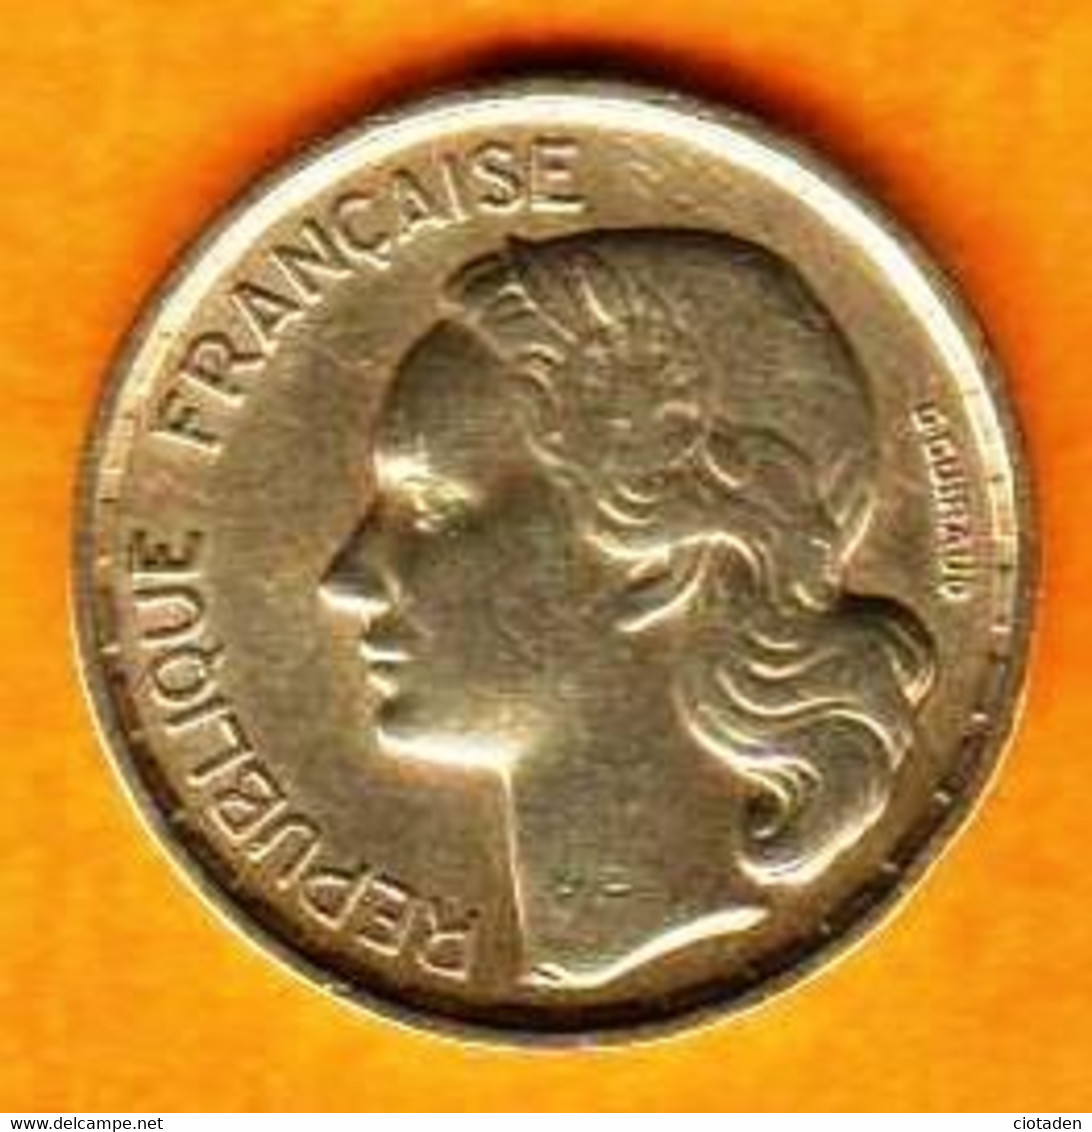 FRANCE / 10 FRANCS / 1953B / Guiraud - 10 Francs